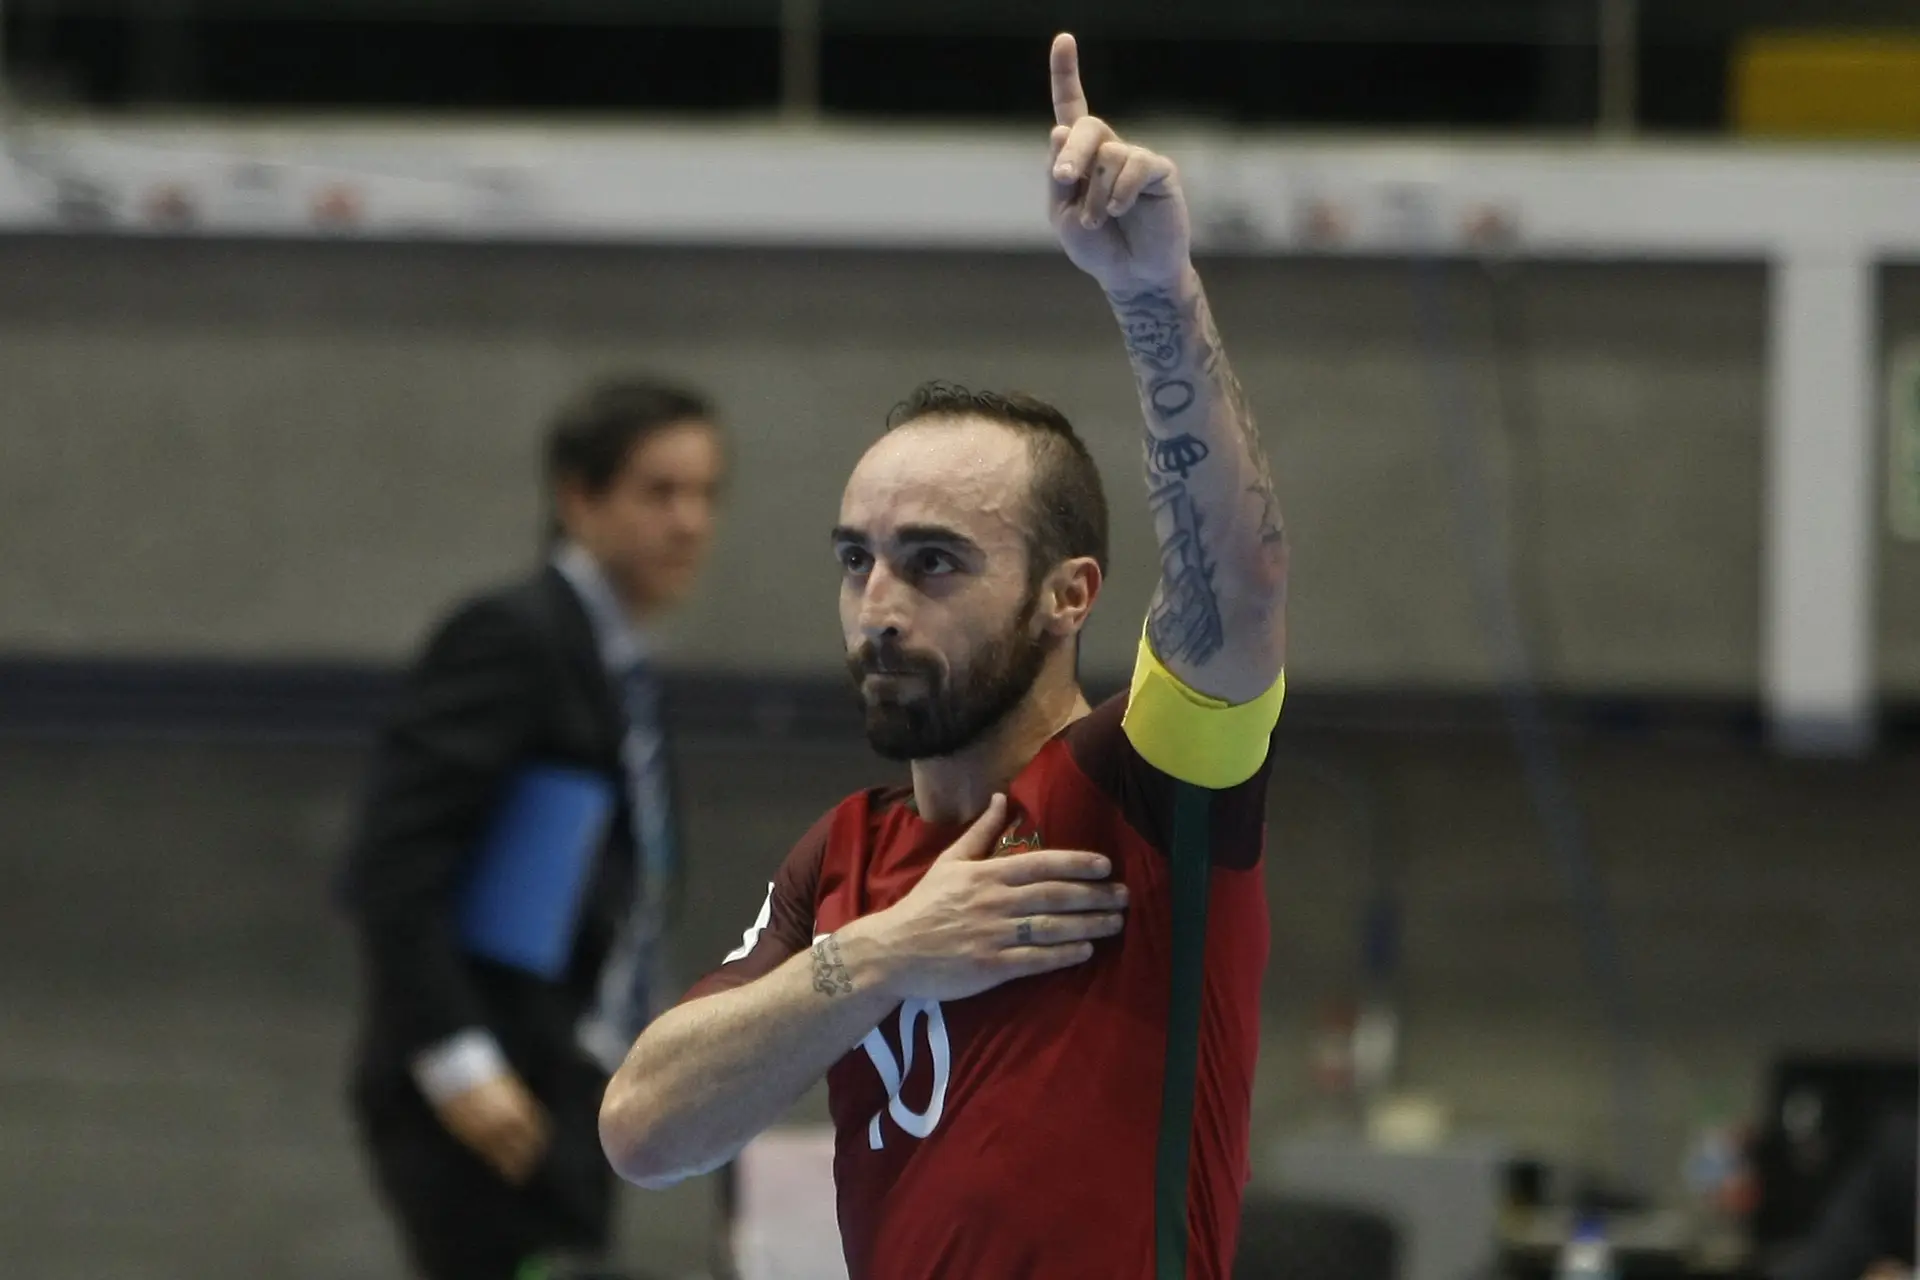 Falcão é eleito melhor jogador de futsal do mundo pela 5ª vez